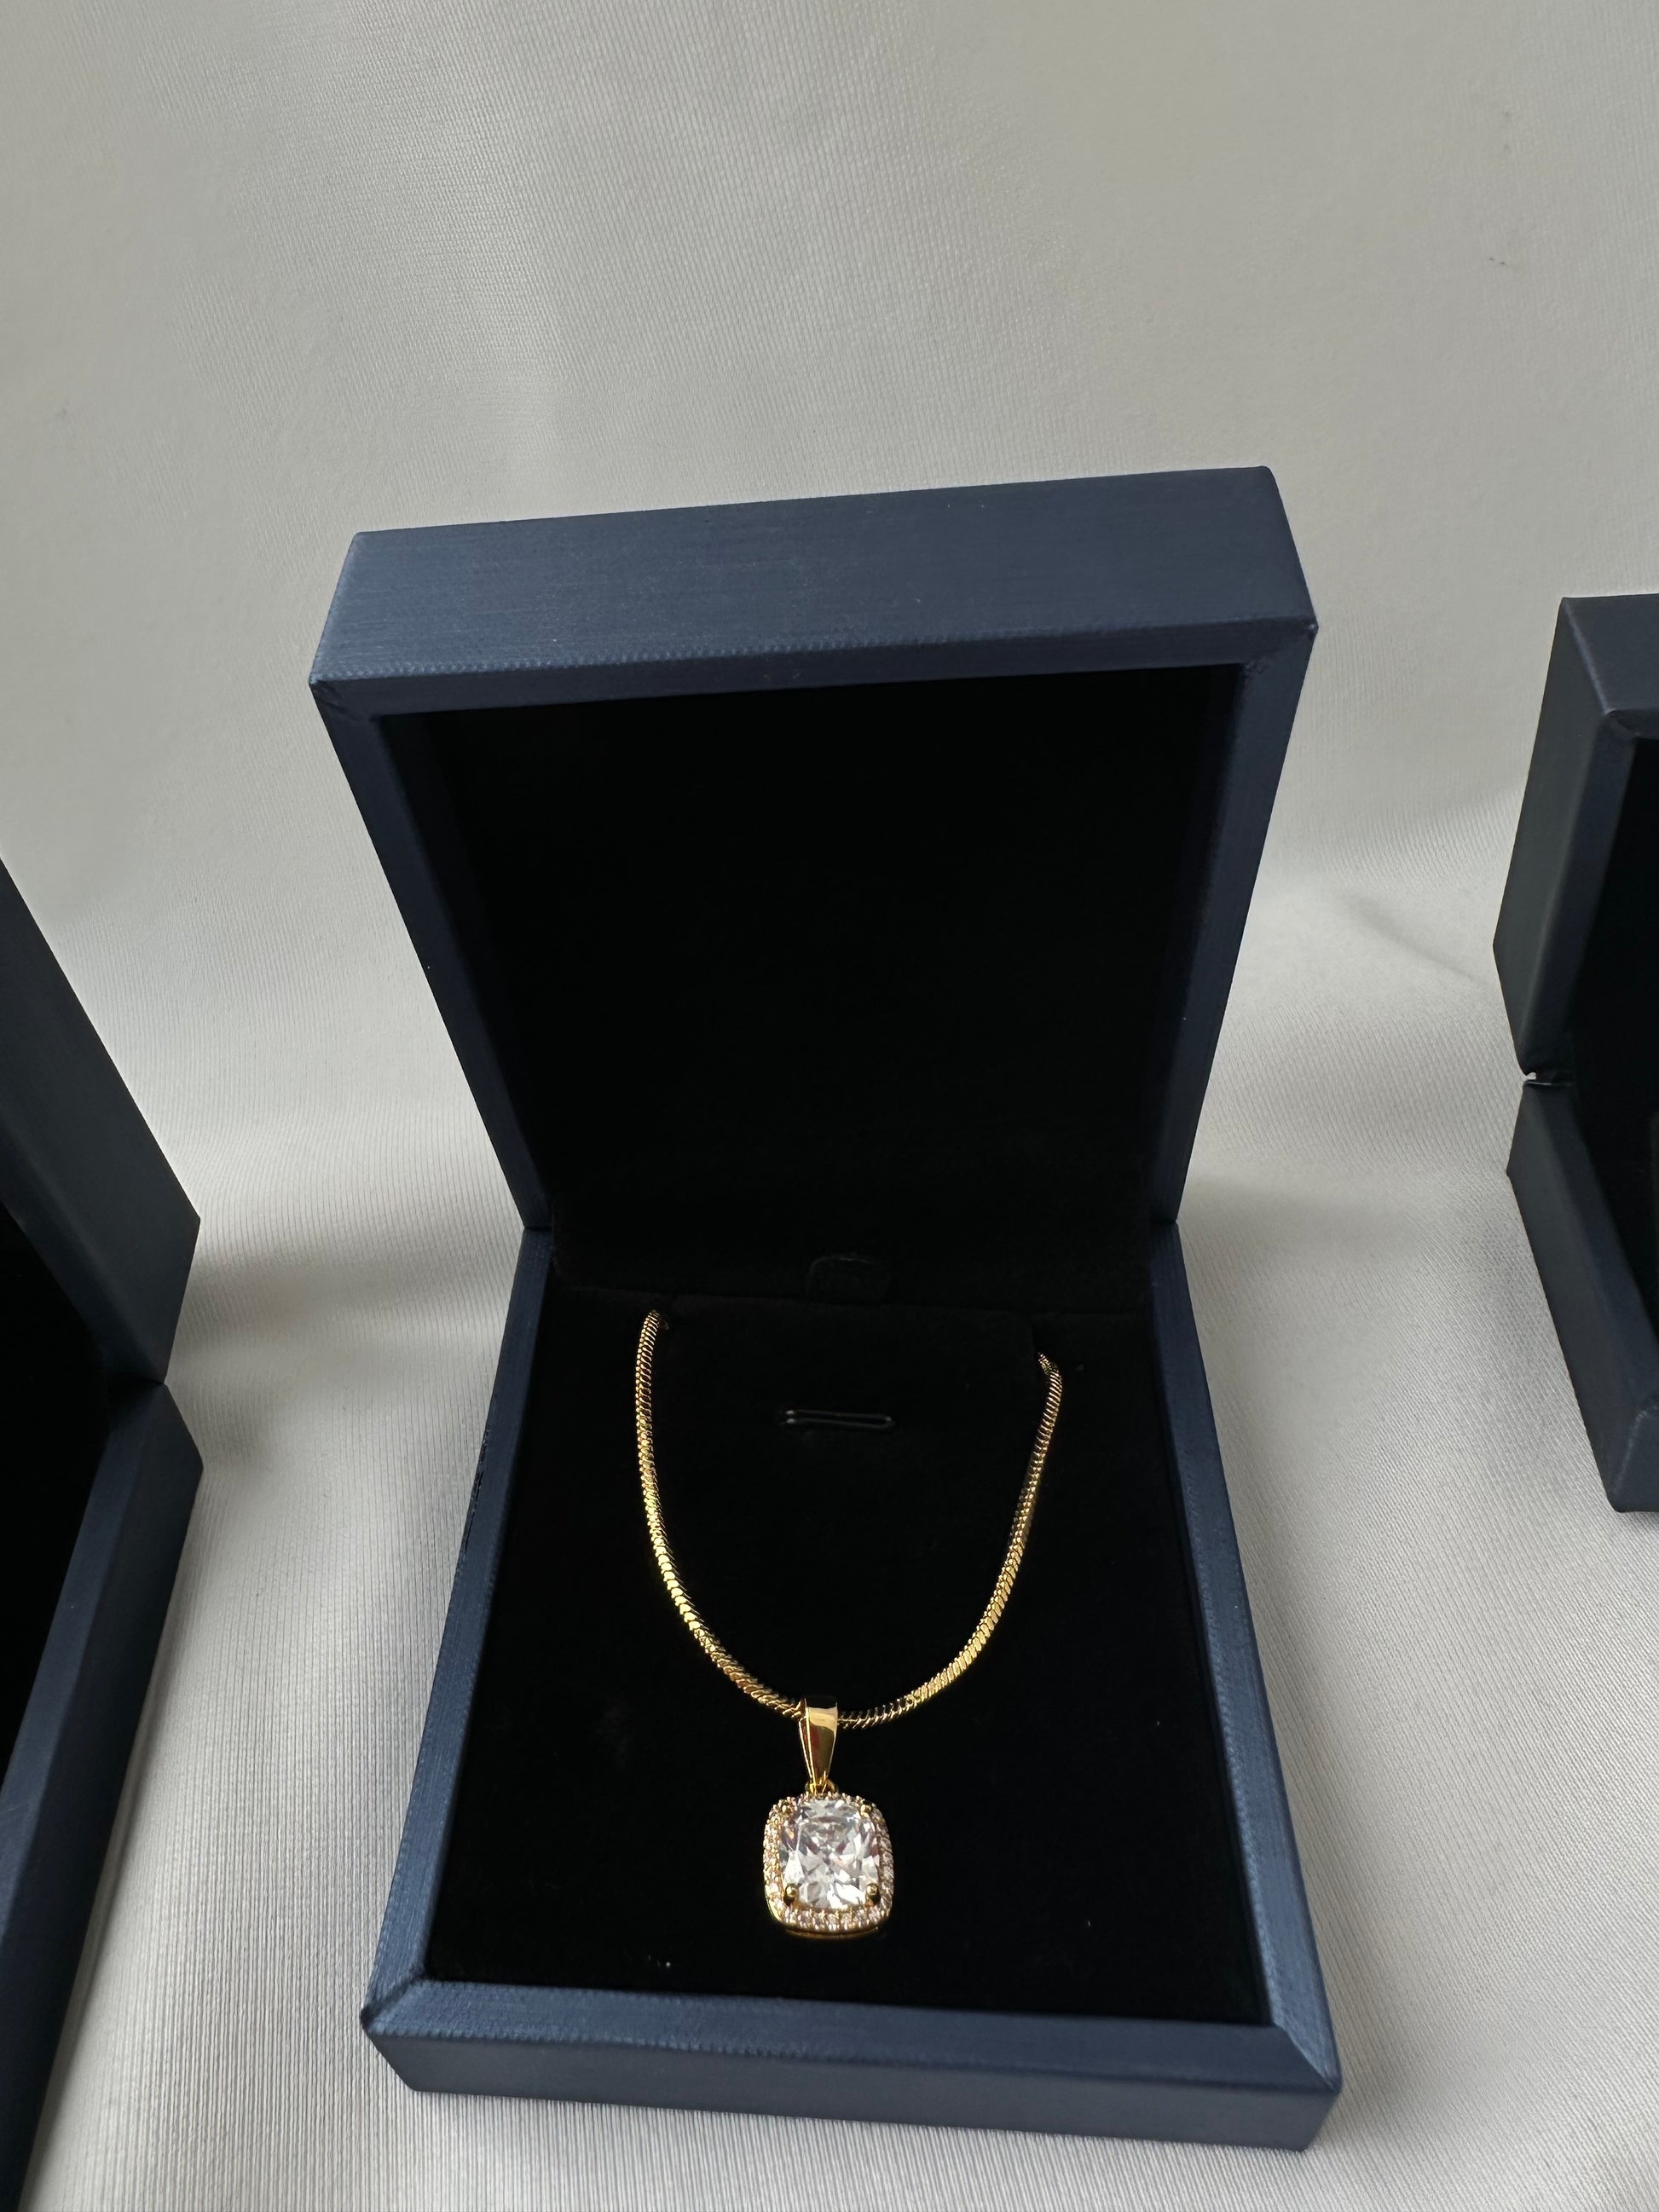 Arawelo Gold Filled 18K – Asliboutique